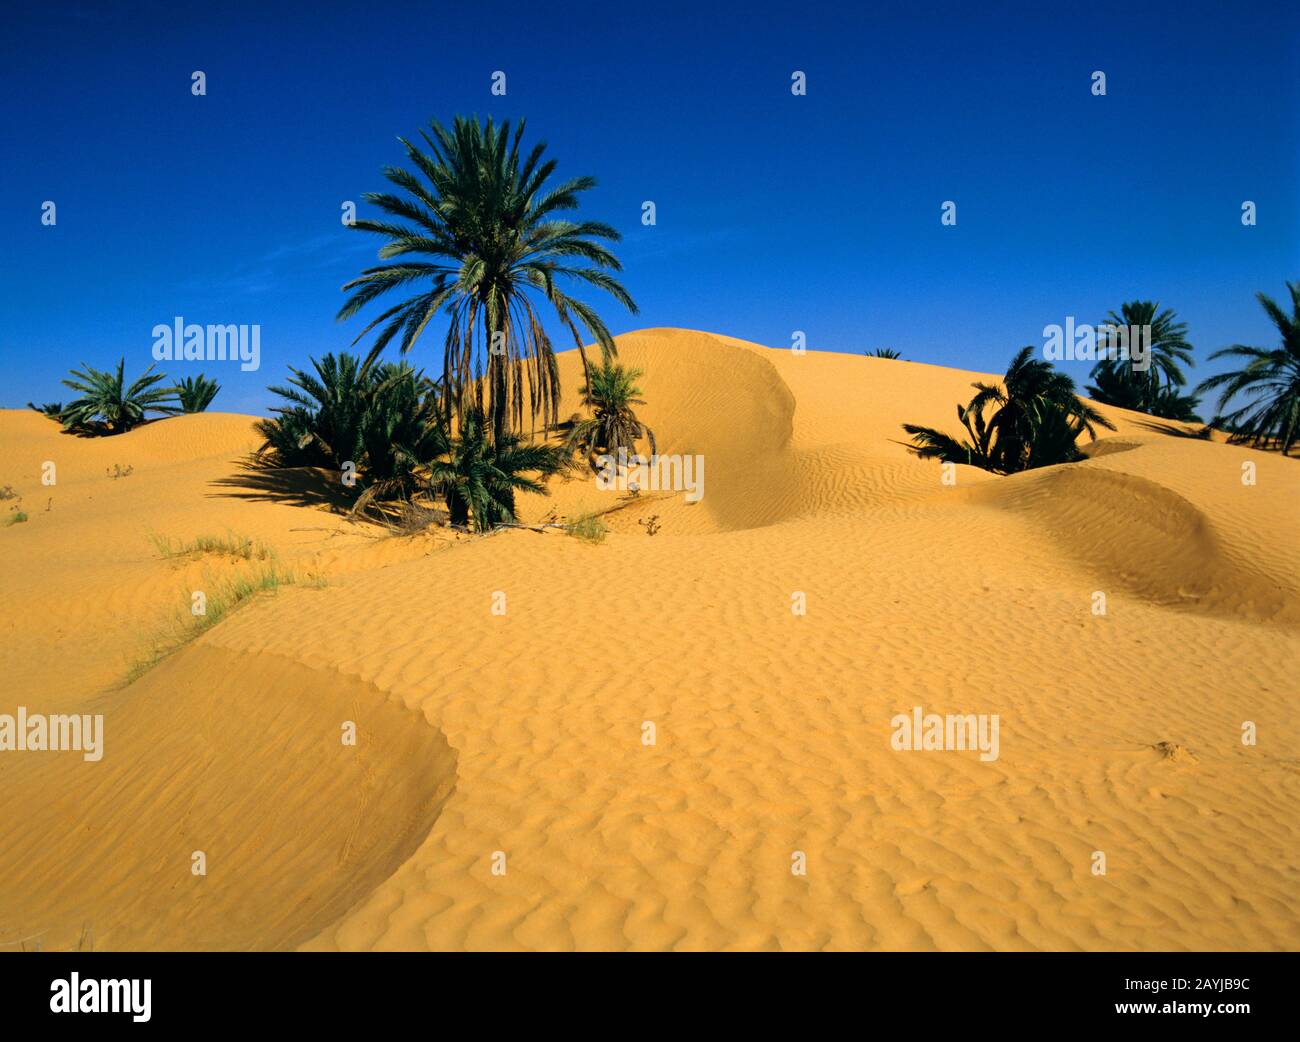 Data palm (Phoenix dactylifera), oasi con palme da dattero, Tunisia Foto Stock